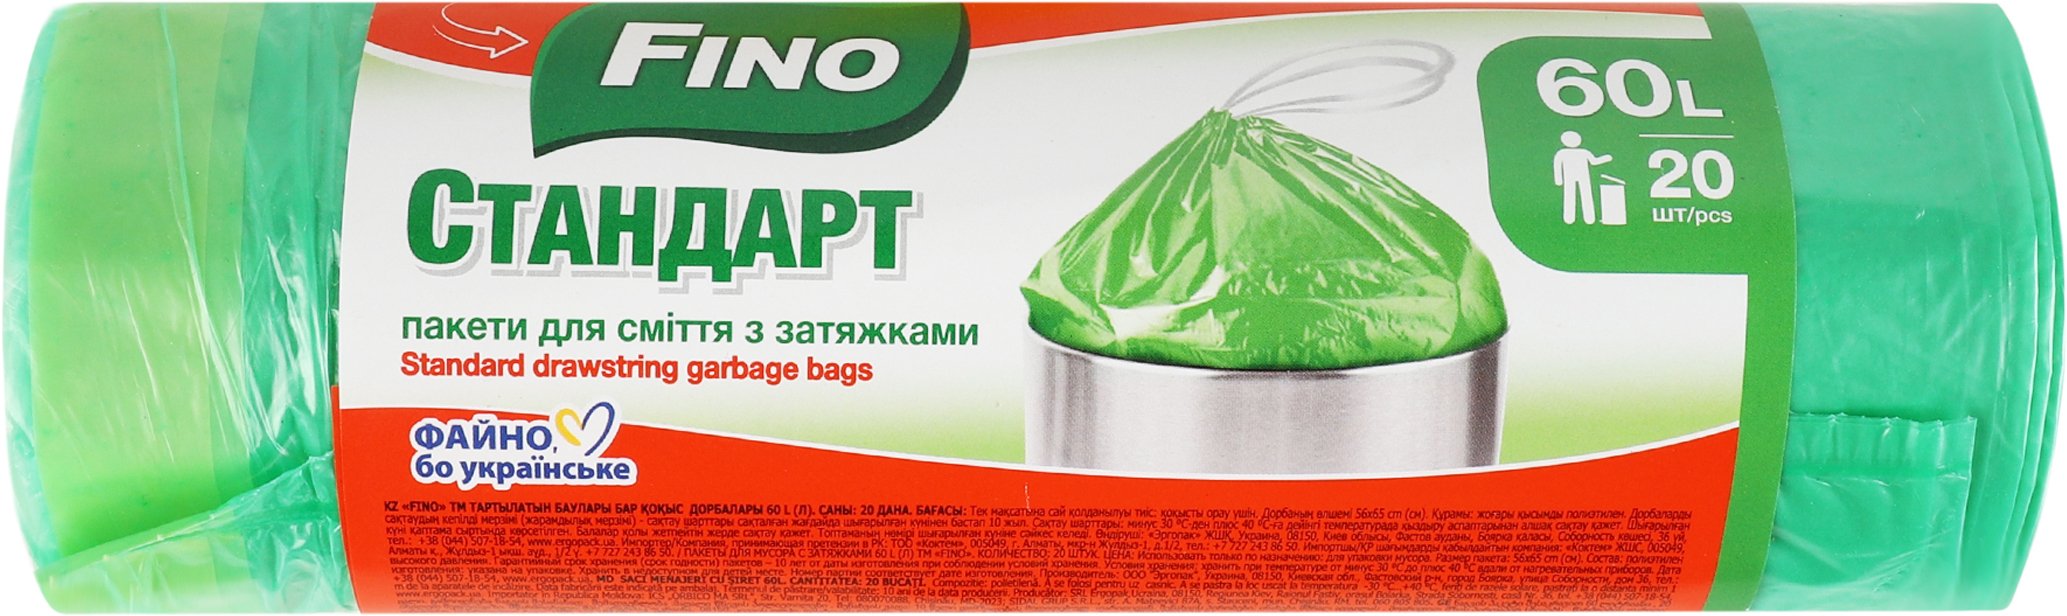 Пакеты для мусора с затяжкой Fino Cтандарт 60л*20шт фото 2